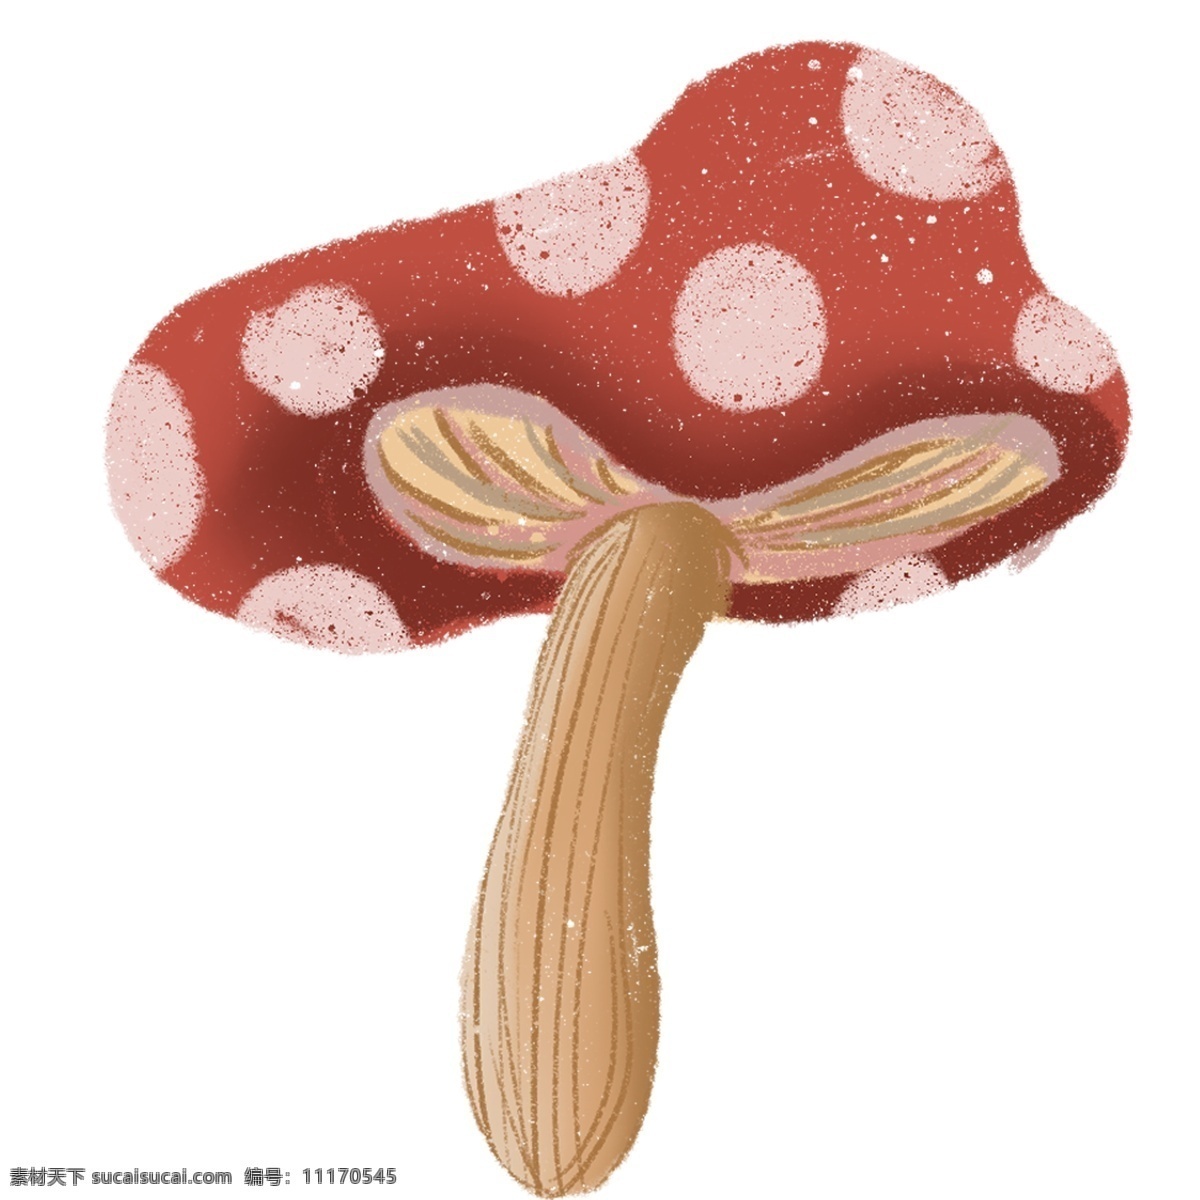 蘑菇 装饰 图案 手绘 卡通 彩色 水彩 创意 绘画元素 现代 简约